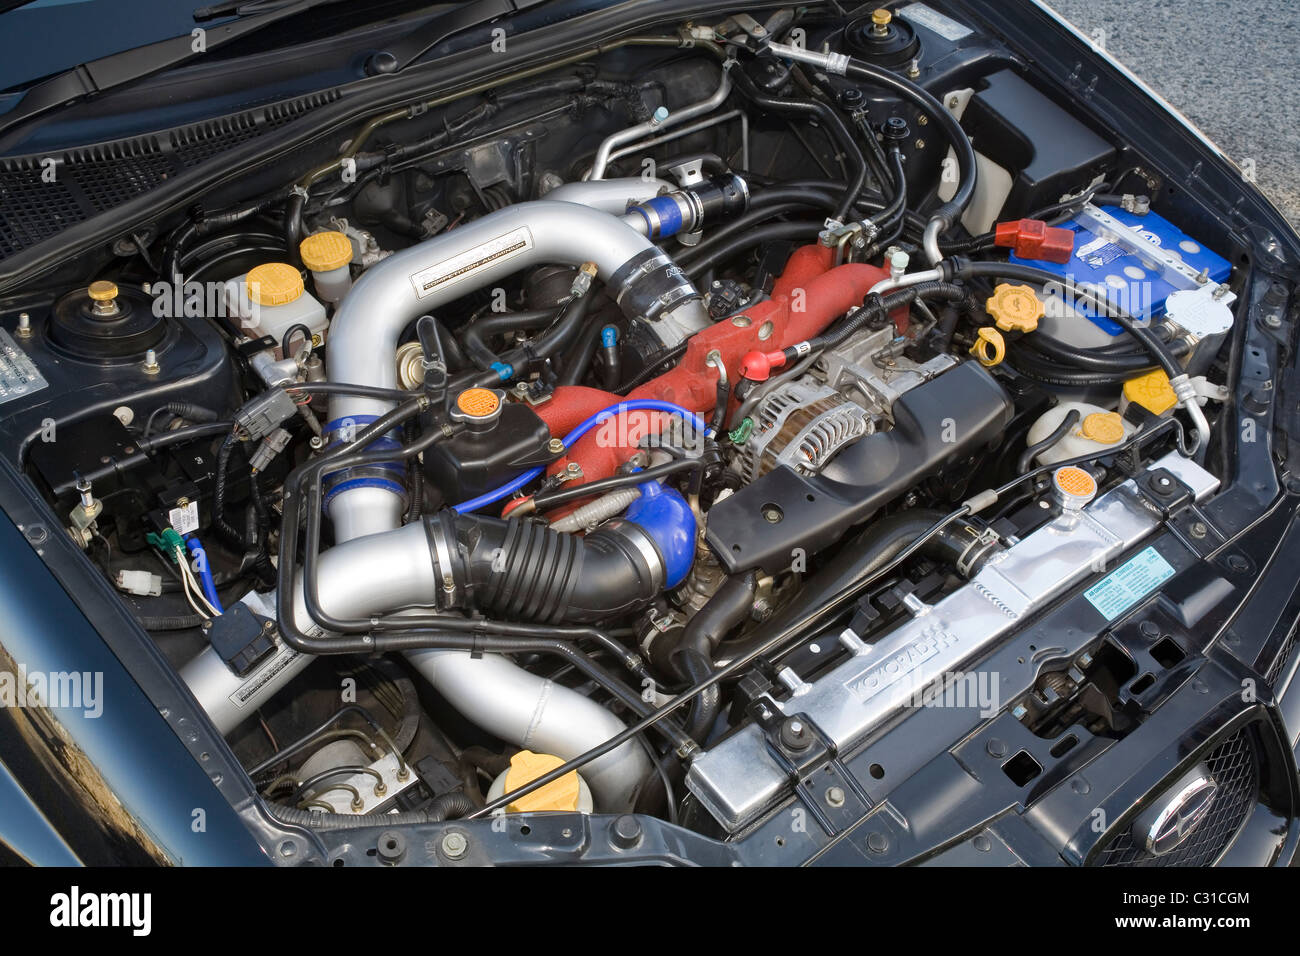 Subaru WRX Imprezza coches deportivos japoneses motor sobrealimentado. Foto de stock